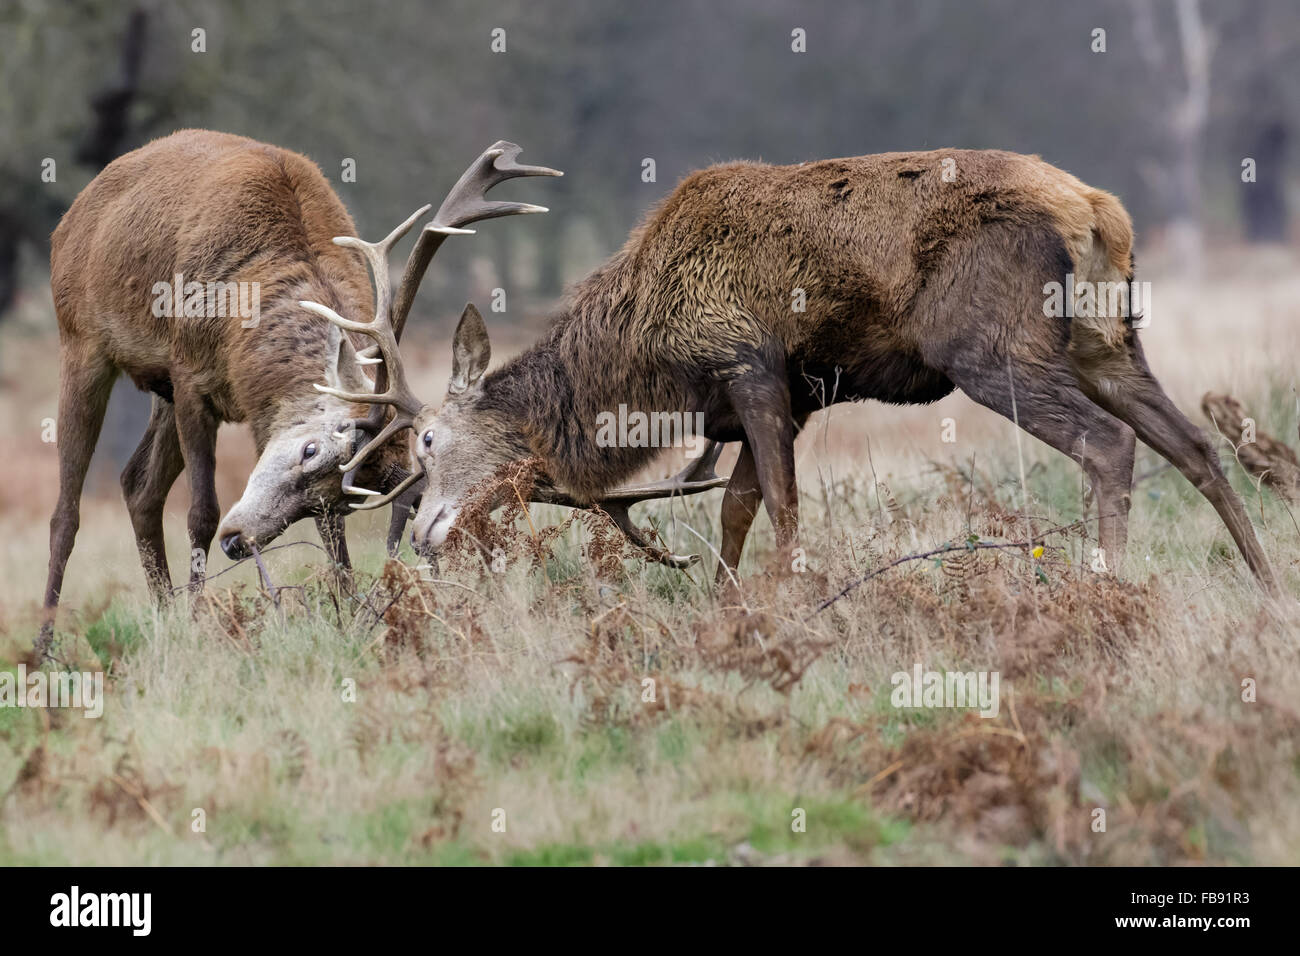 Stags rut de ciervo rojo (Cervus elaphus) combates de sparring o el duelo en invierno. Foto de stock